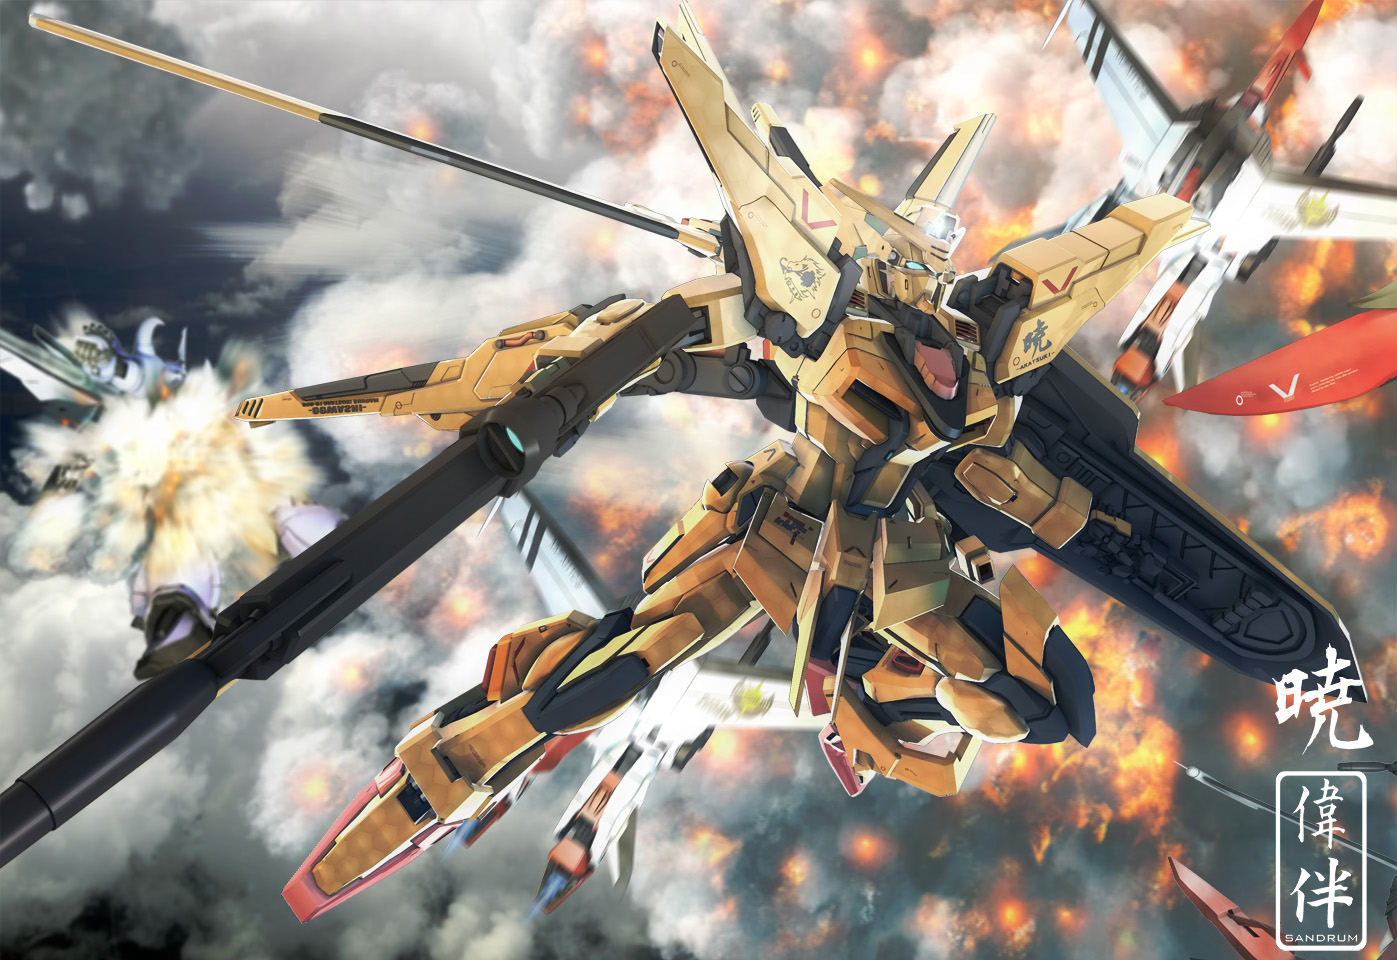 Another Gundam Inspired Wallpaper By Deviantart